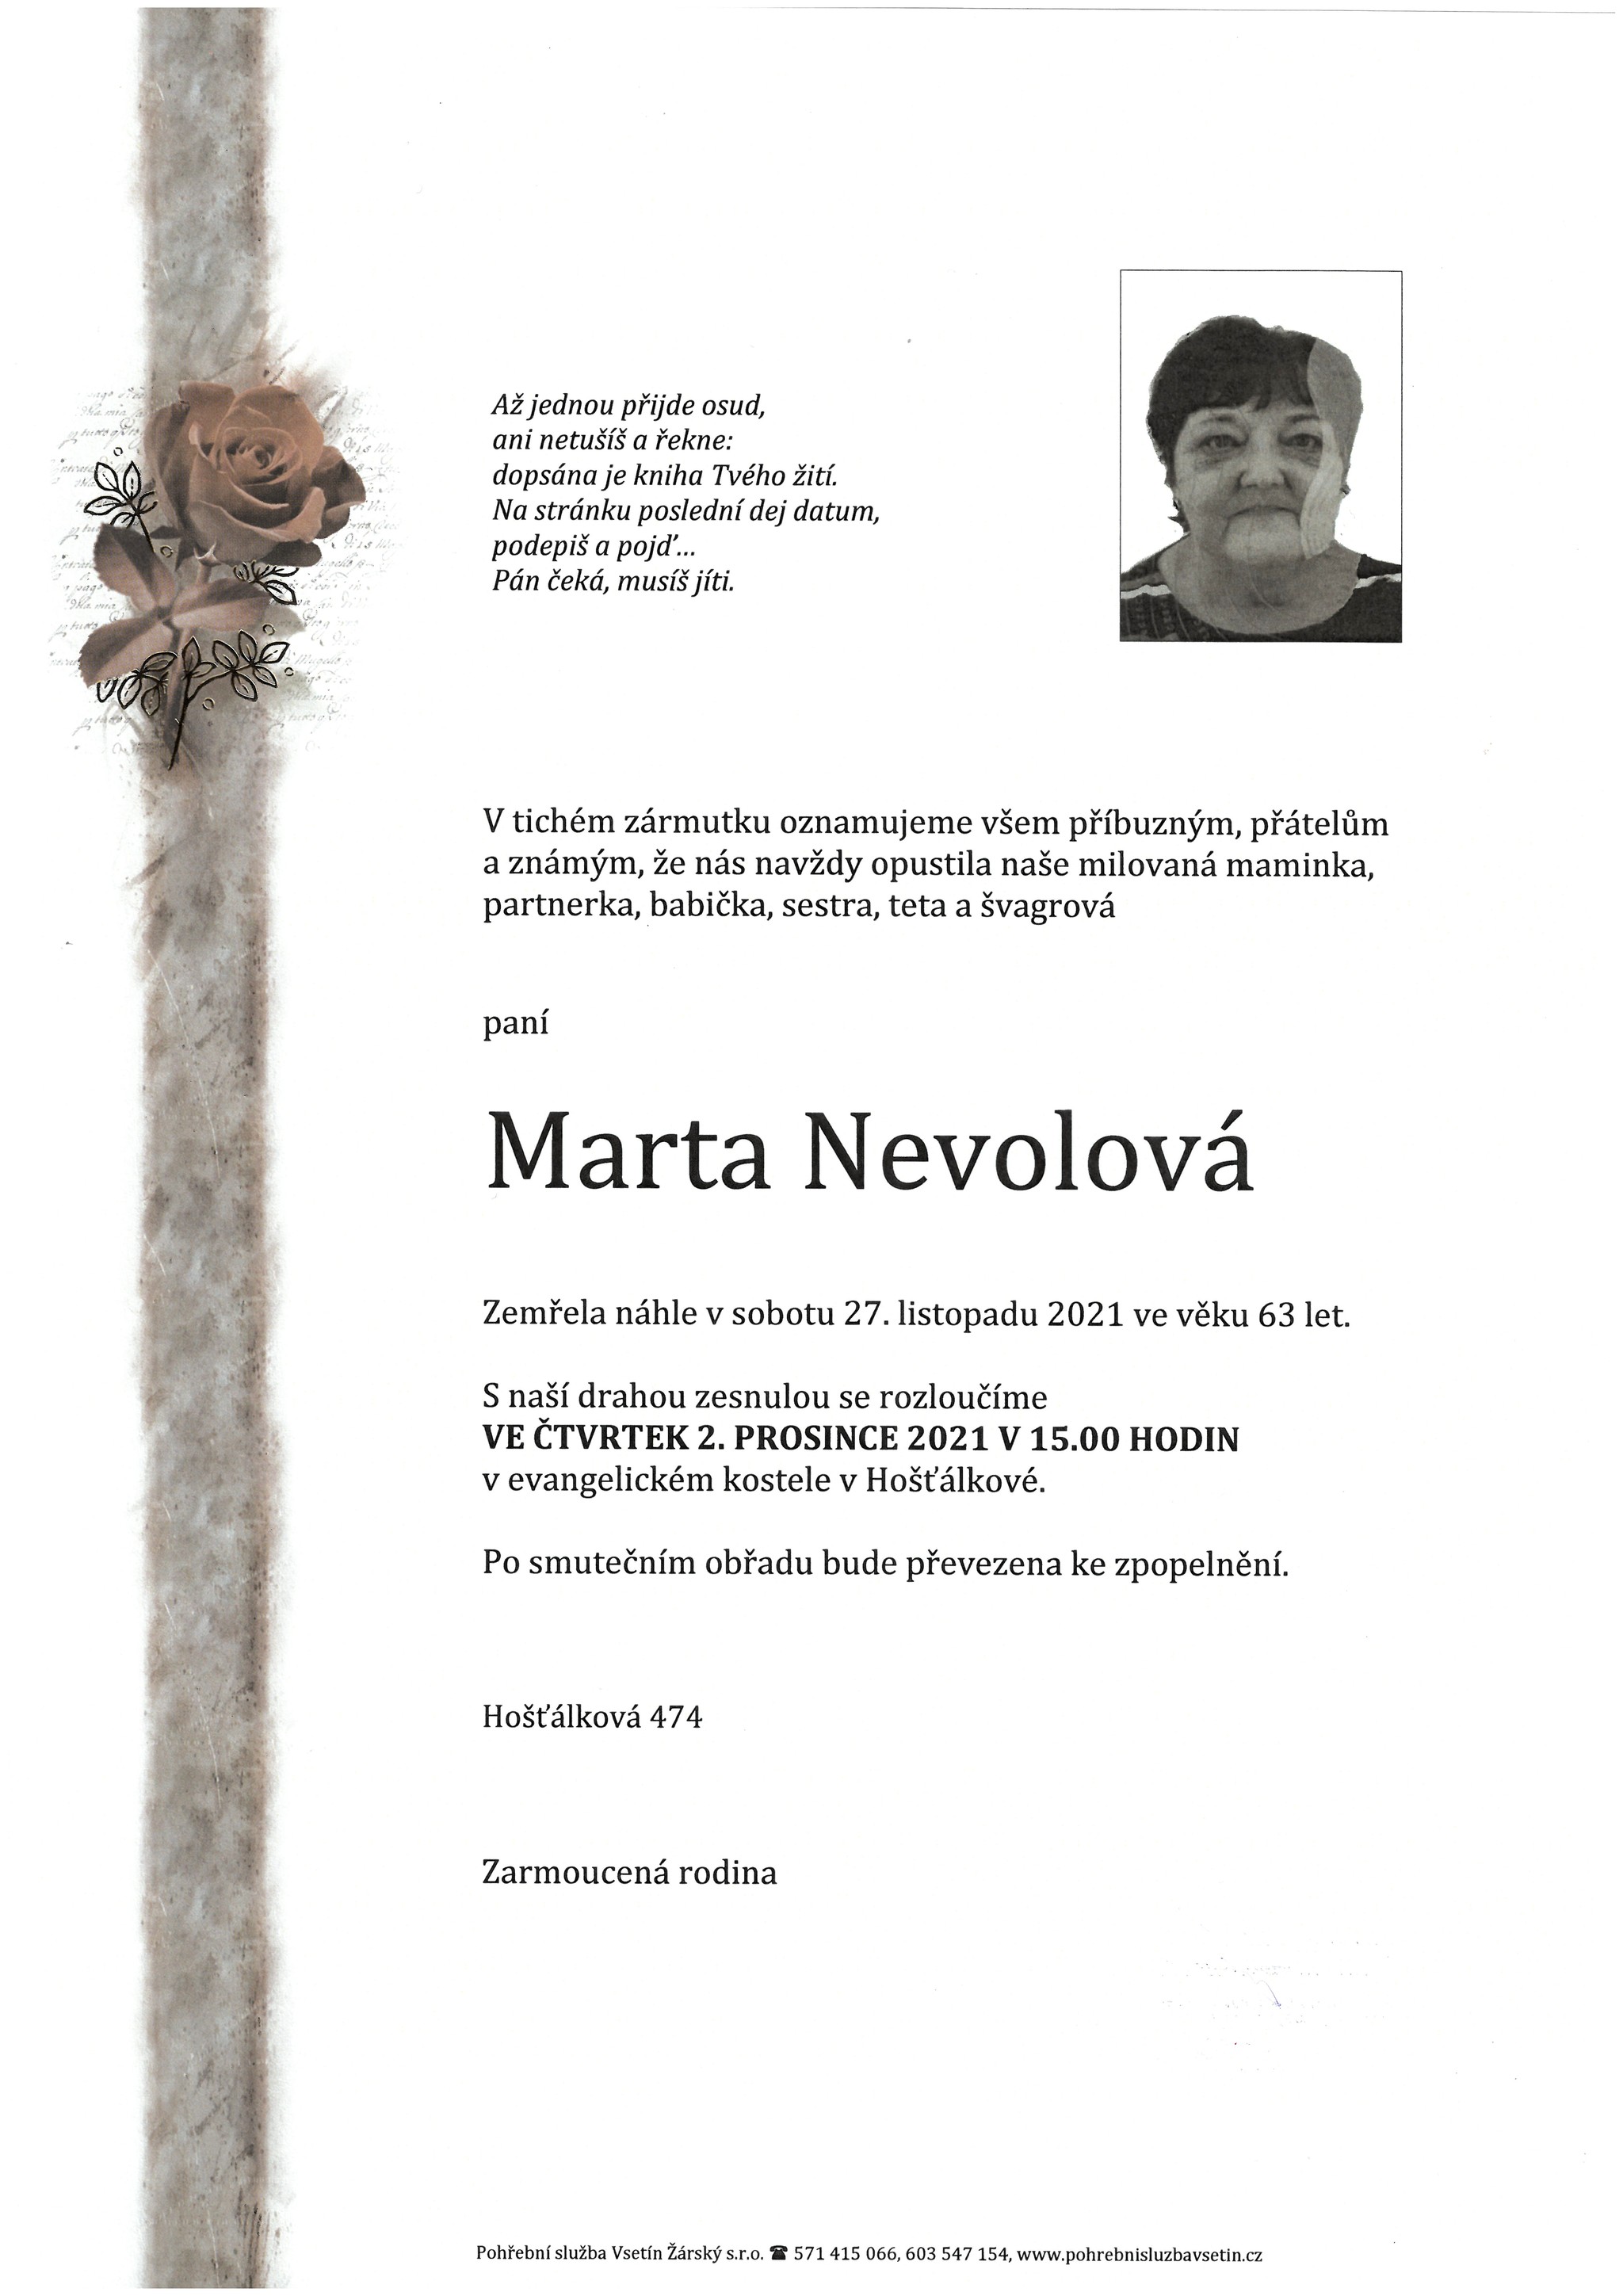 Marta Nevolová